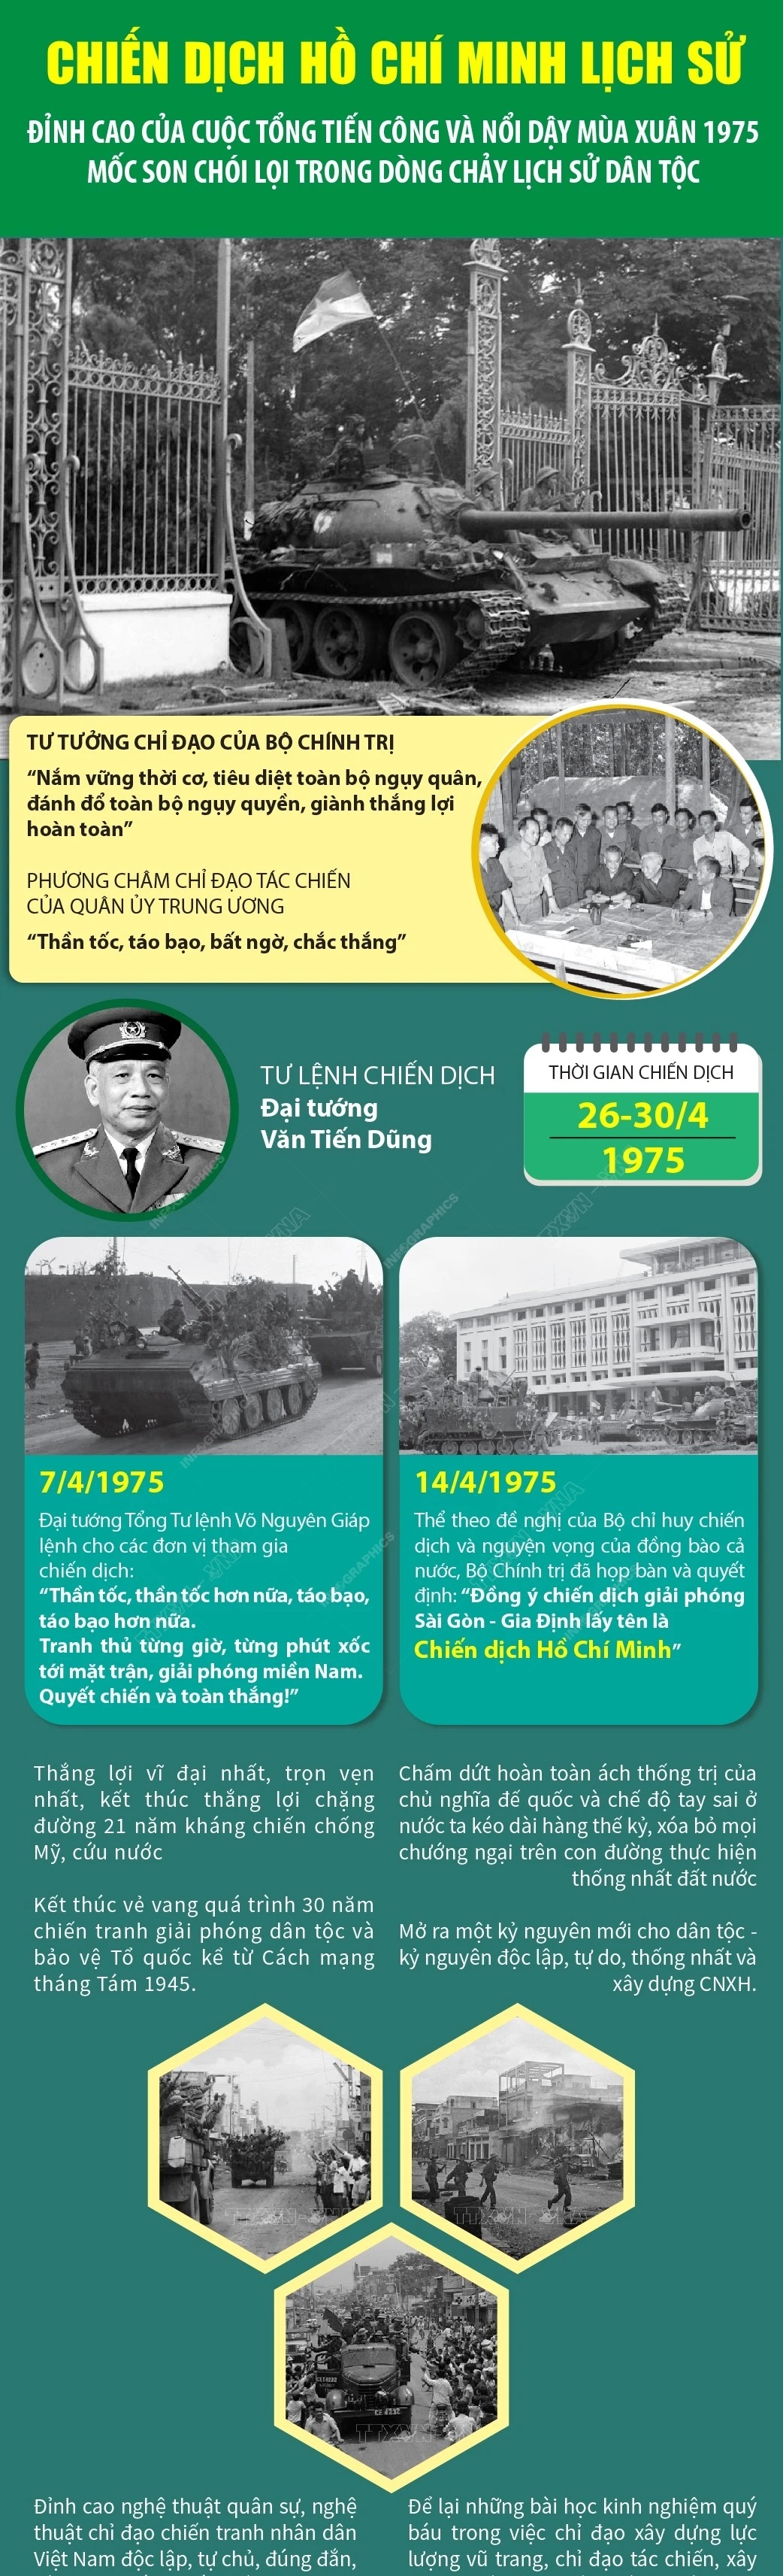 Chiến dịch Hồ Chí Minh - Đỉnh cao thắng lợi của cách mạng Việt Nam- Ảnh 6.